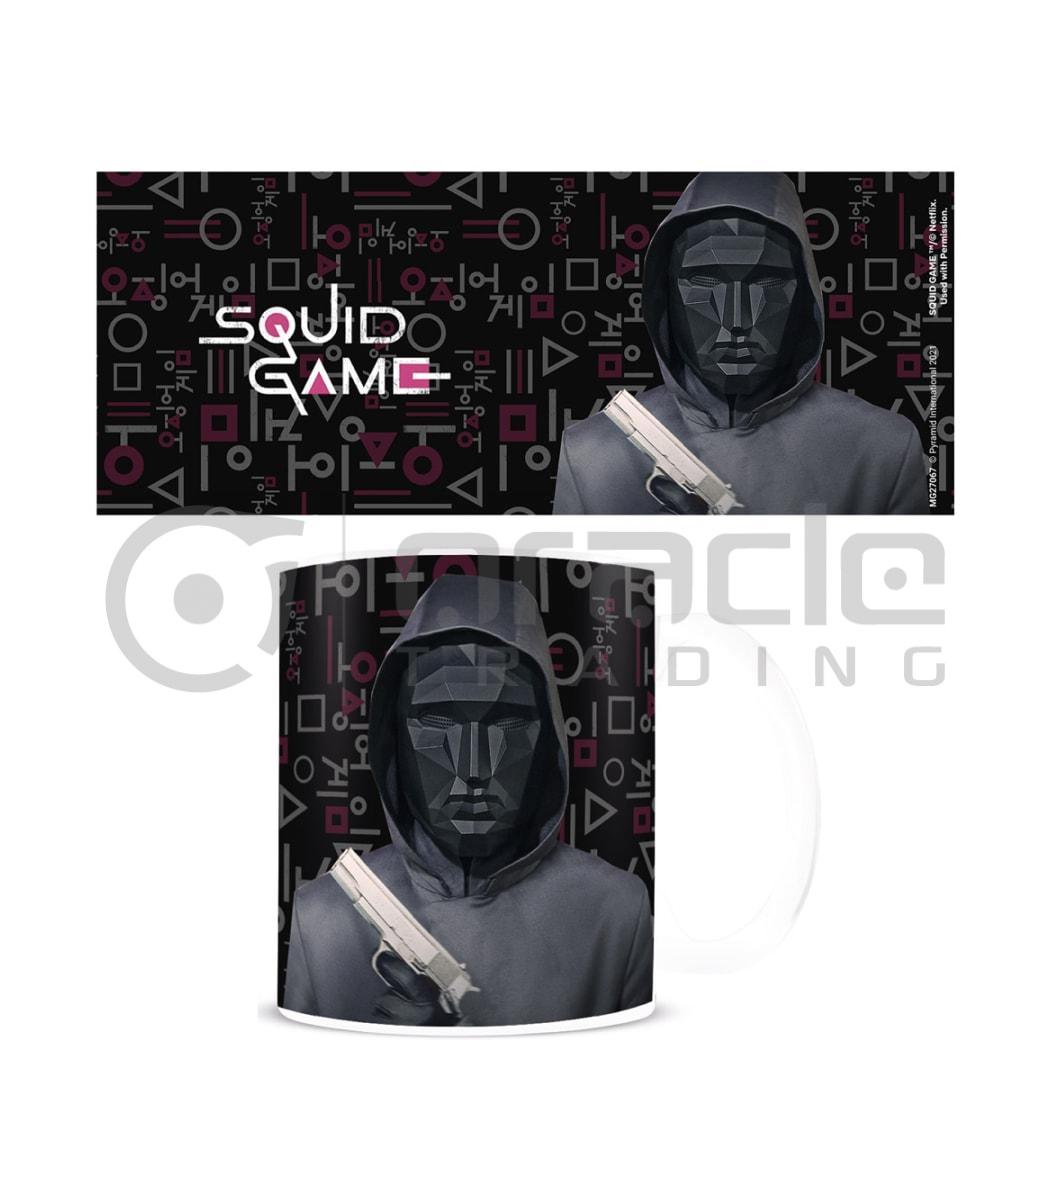 Squid Game Mug - Front Man